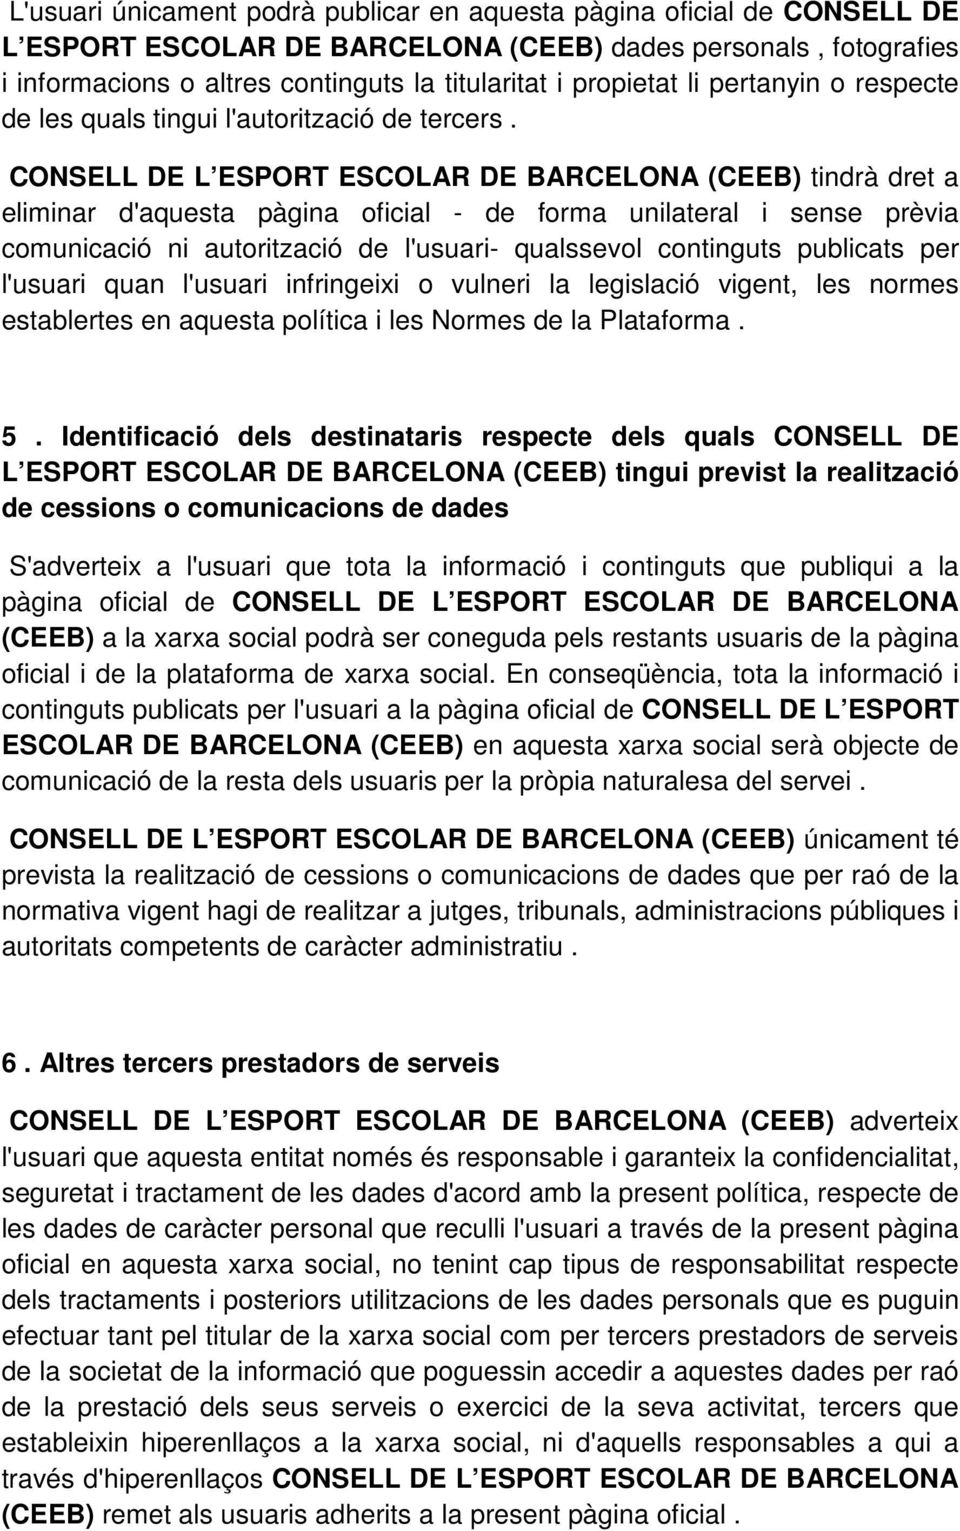 CONSELL DE L ESPORT ESCOLAR DE BARCELONA (CEEB) tindrà dret a eliminar d'aquesta pàgina oficial - de forma unilateral i sense prèvia comunicació ni autorització de l'usuari- qualssevol continguts